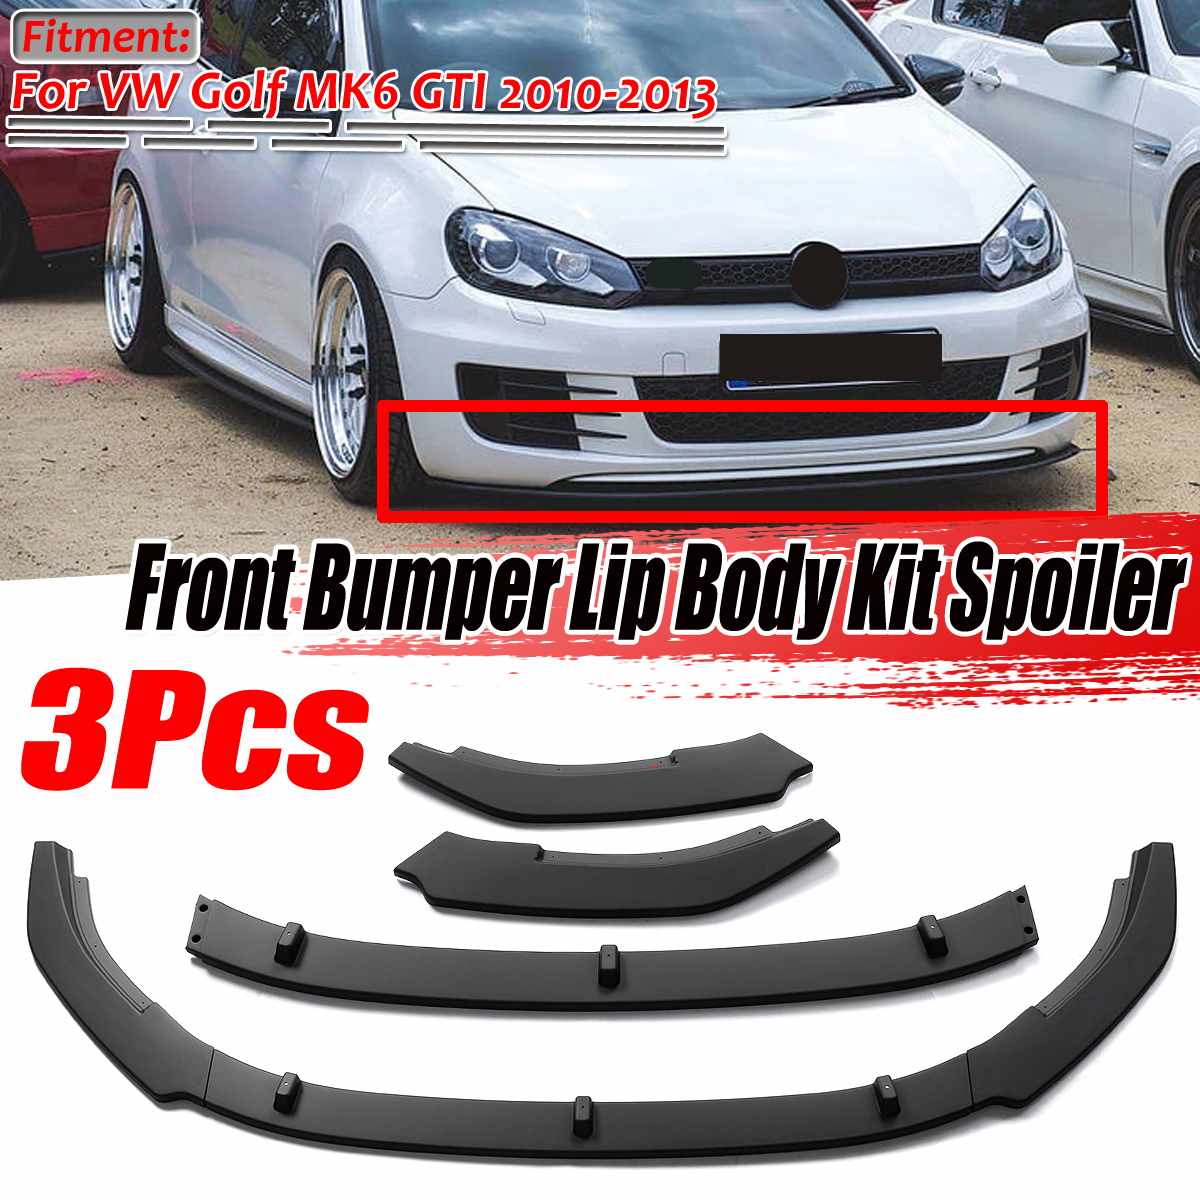 High Quality 3 Piece Car Front Bumper Splitter Lip Body Kit Spoiler for VW